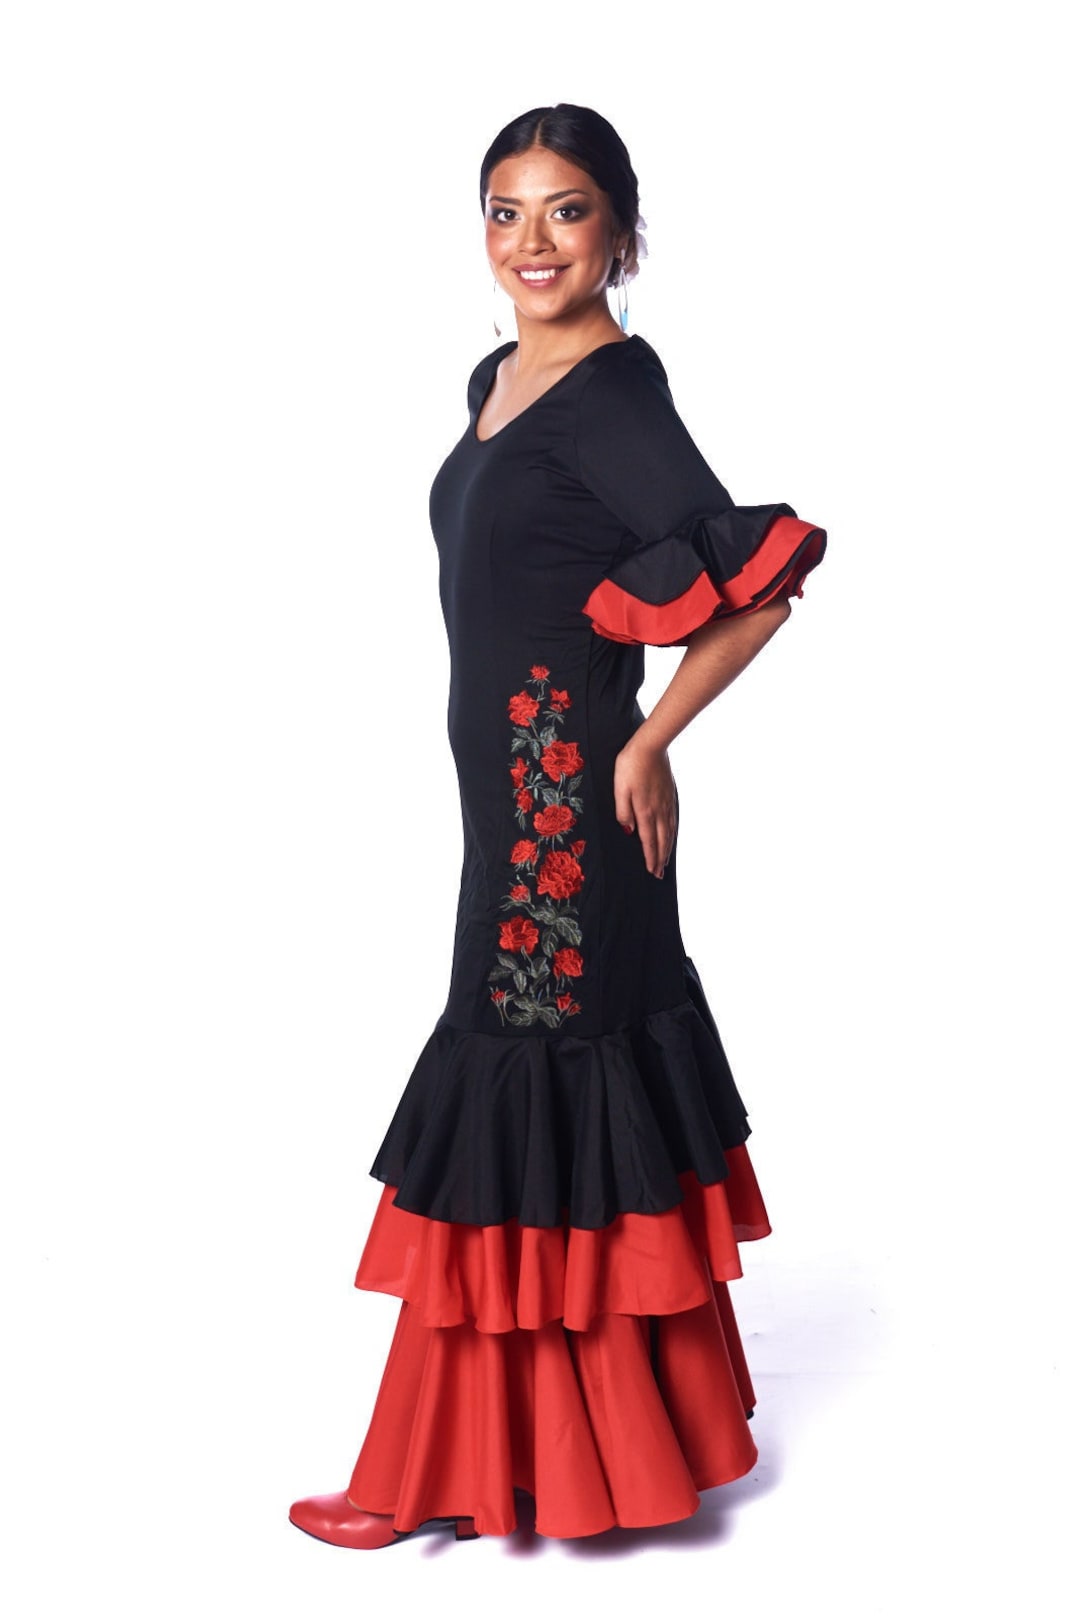 Disfraz de Flamenca Rojo con Puntos Grandes para mujer